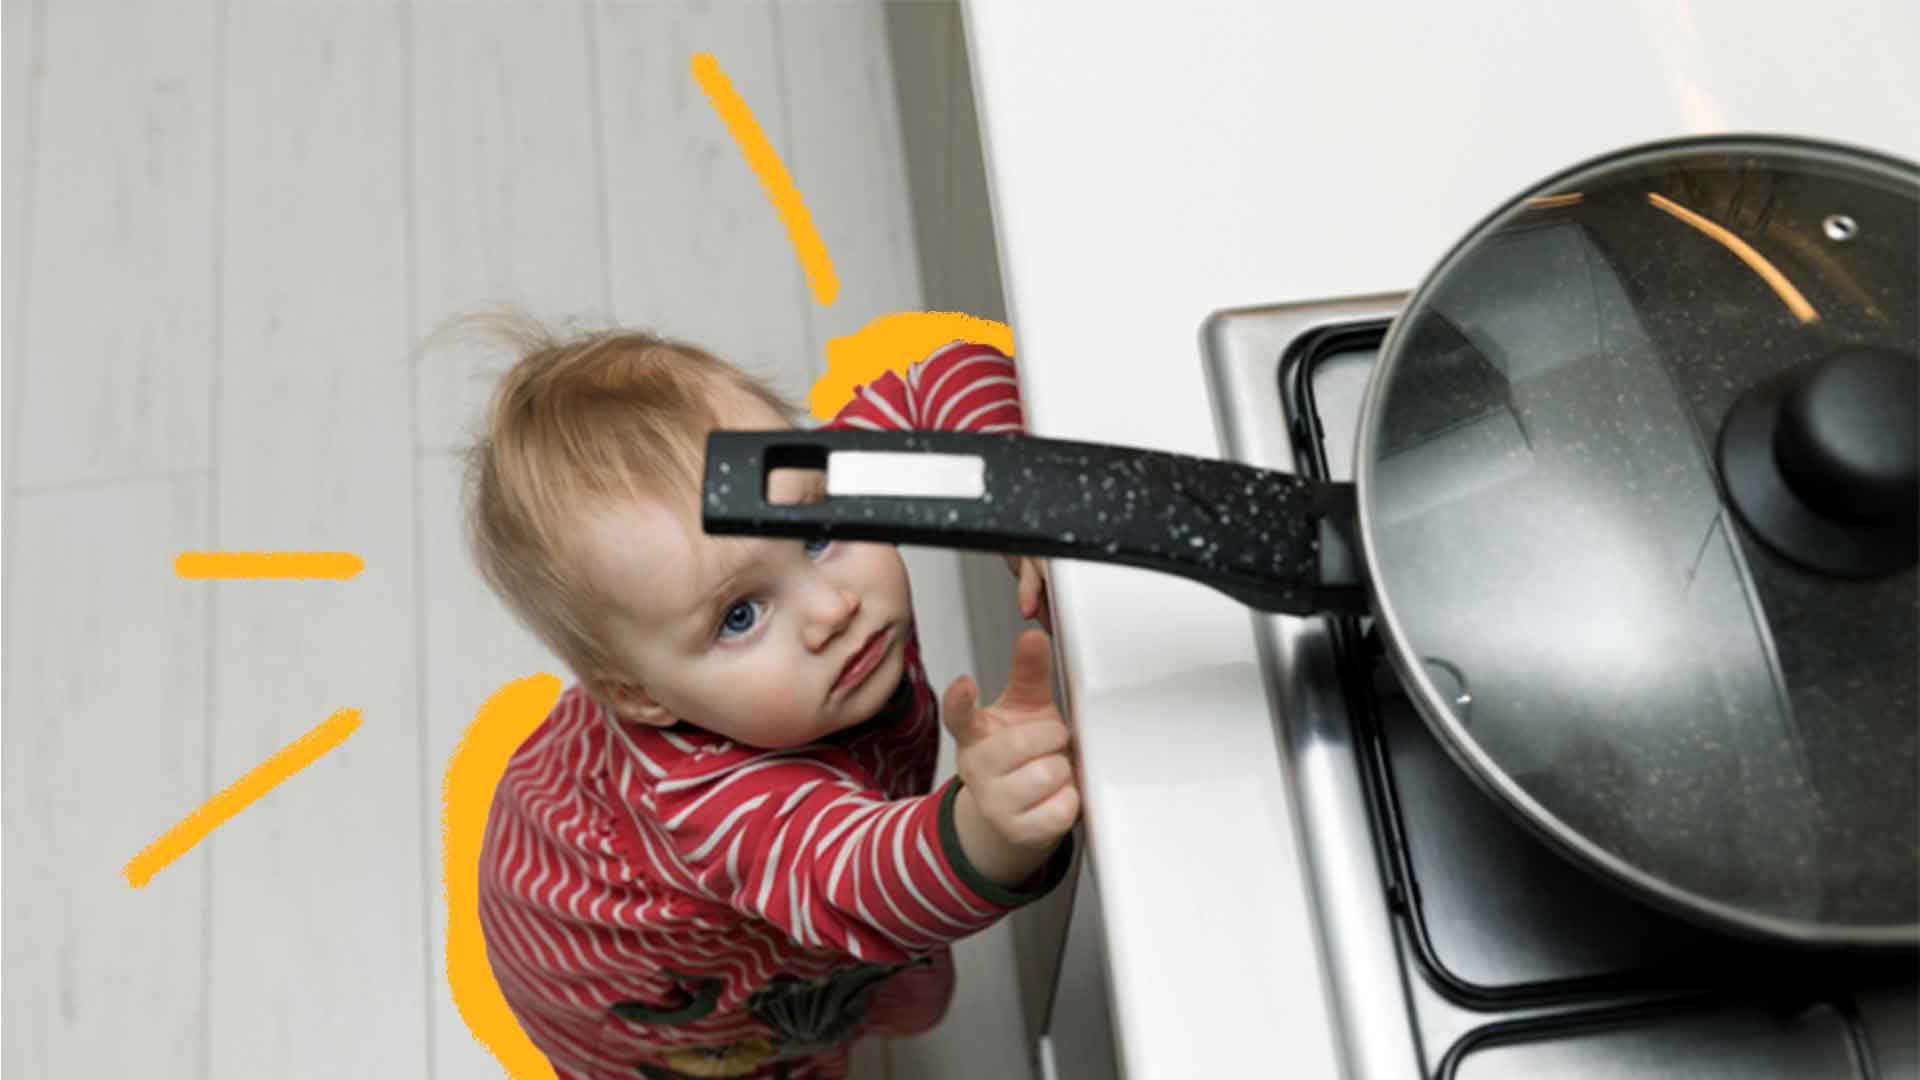 Imagem de um fogão com uma panela com o cabo virado para fora. Encostado no fogão um bebê está olhando para o cabo da panela e apontando com o dedo.